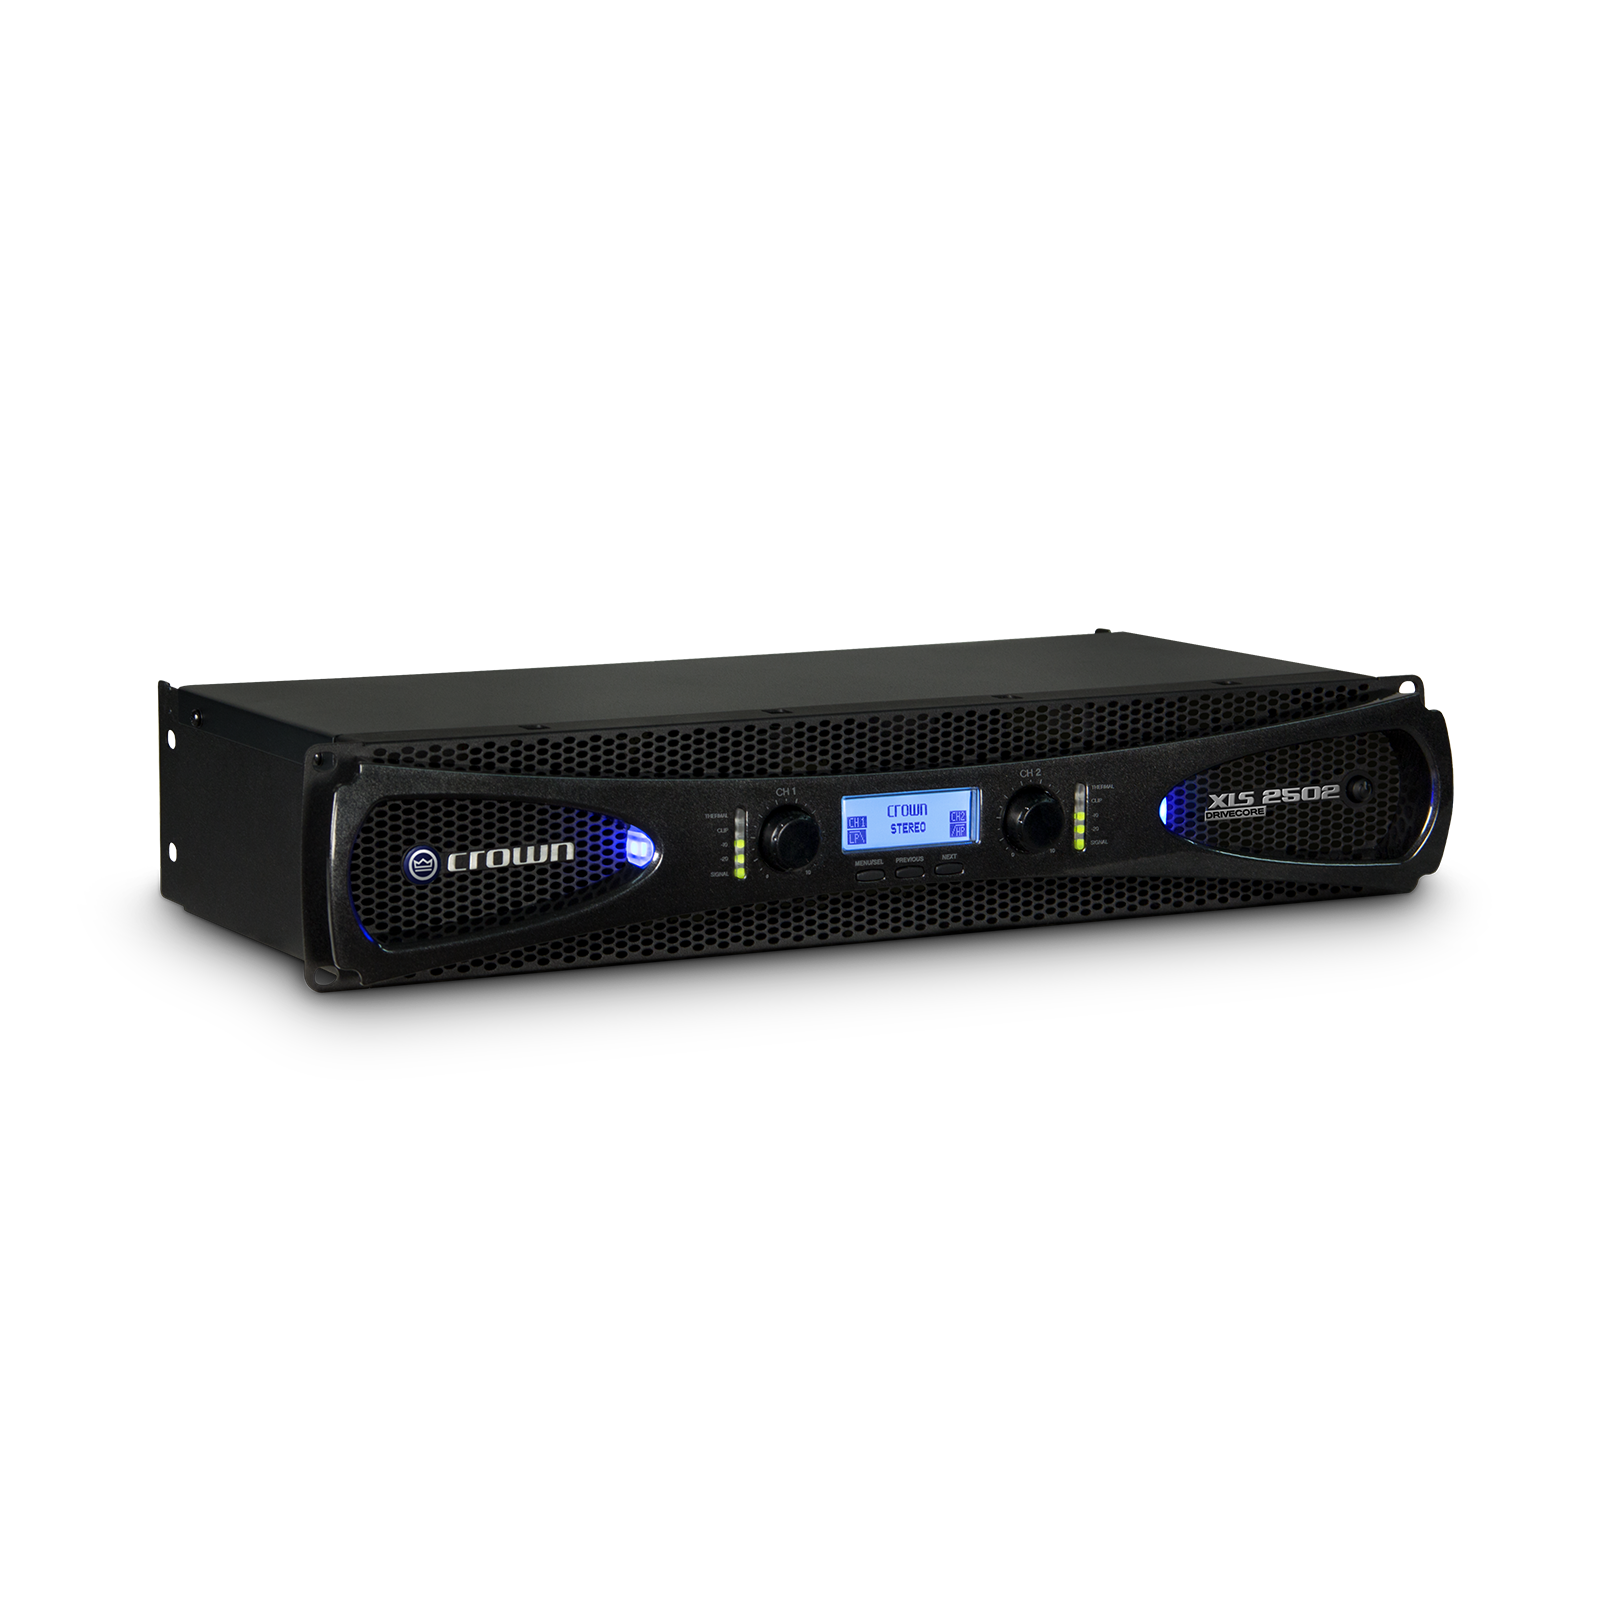 XLS 2502 - Black - Two-channel, 775W @ 4Ω power amplifier - Hero